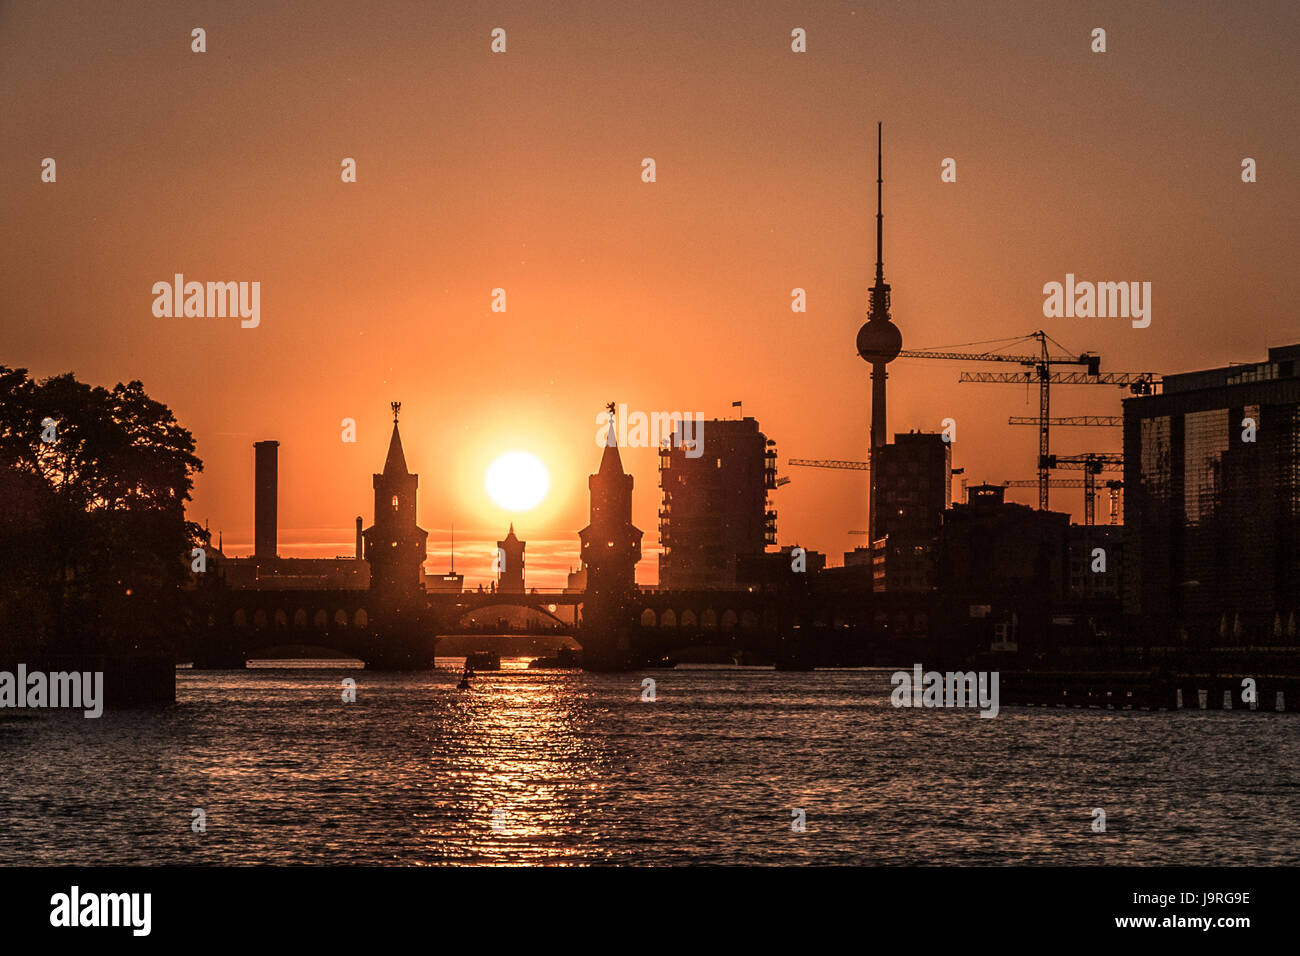 Spree, Oberbaum Bridge, la tour de télévision - Berlin city skyline avec sunset sky Banque D'Images